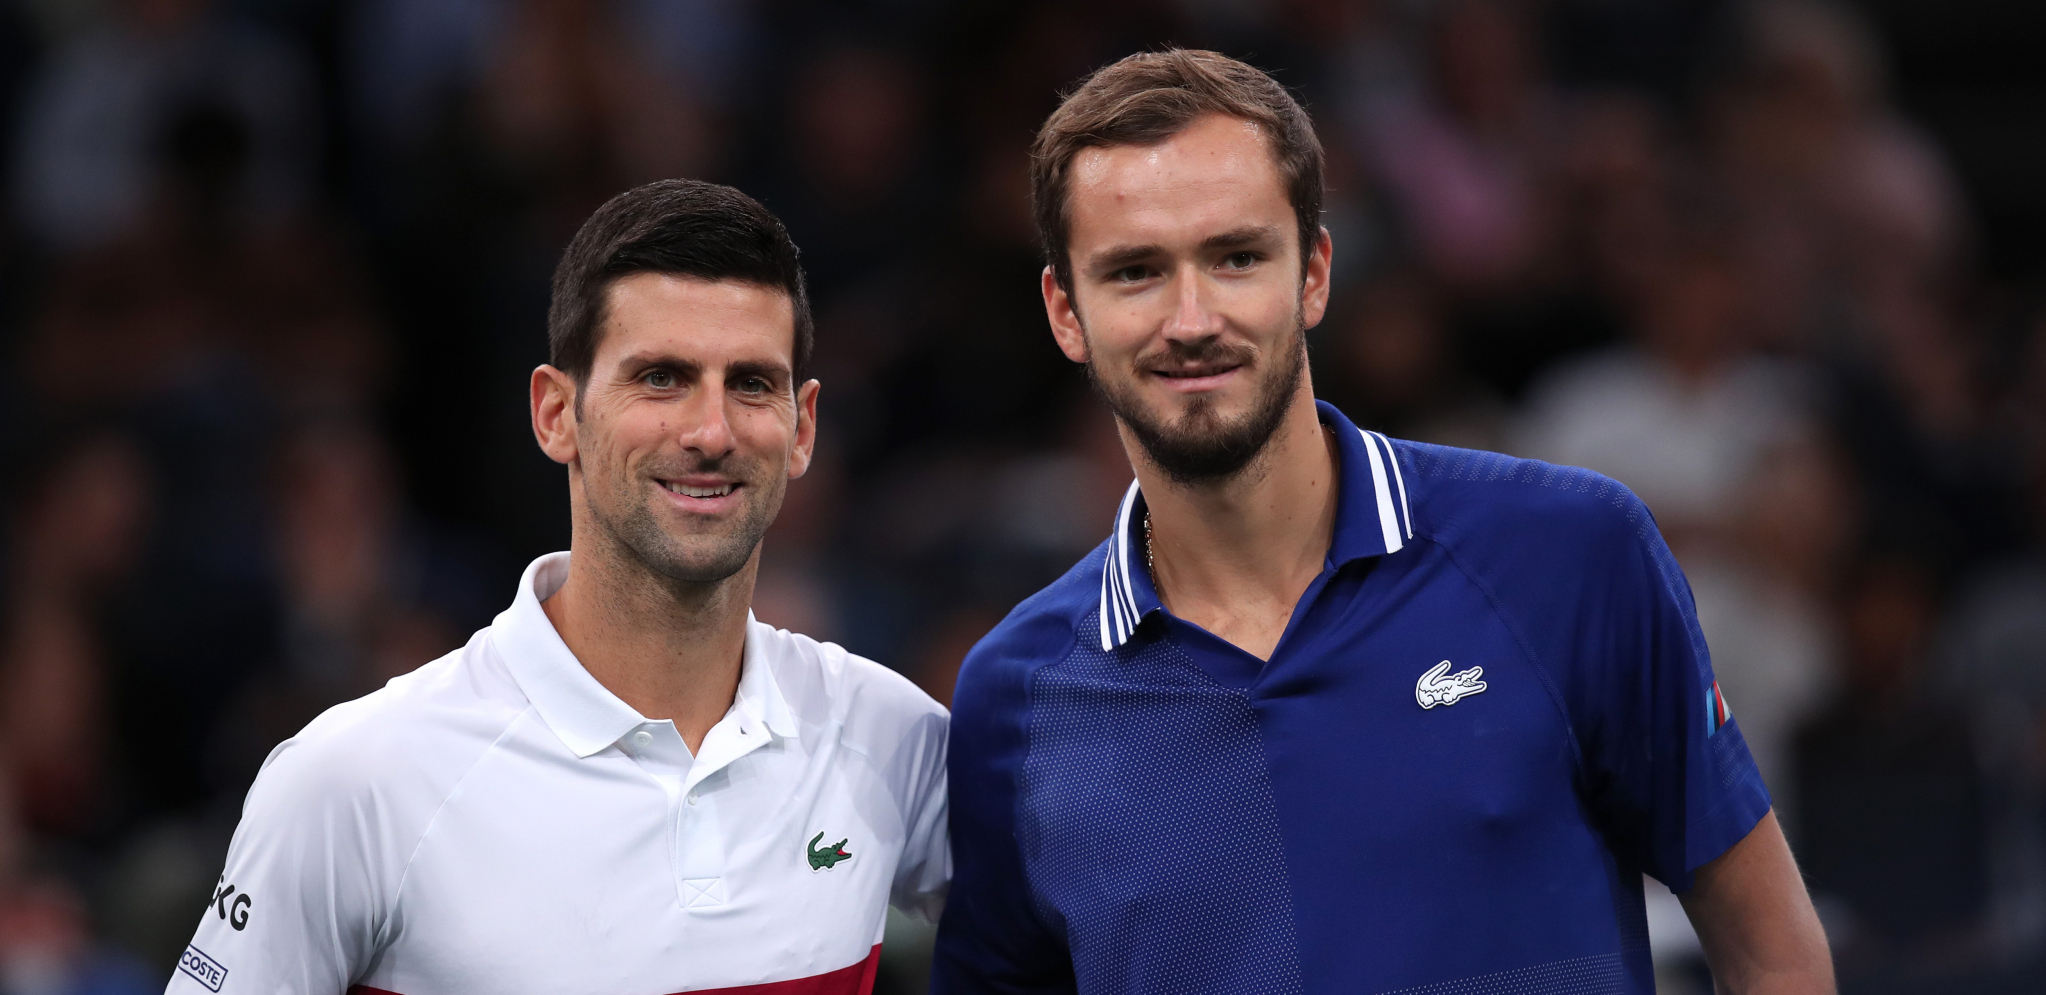 RUS OPASNO DIŠE NOVAKU ZA VRATOM! Federerov "dželat" ima priliku da zadrži Đokovića na teniskom tronu!